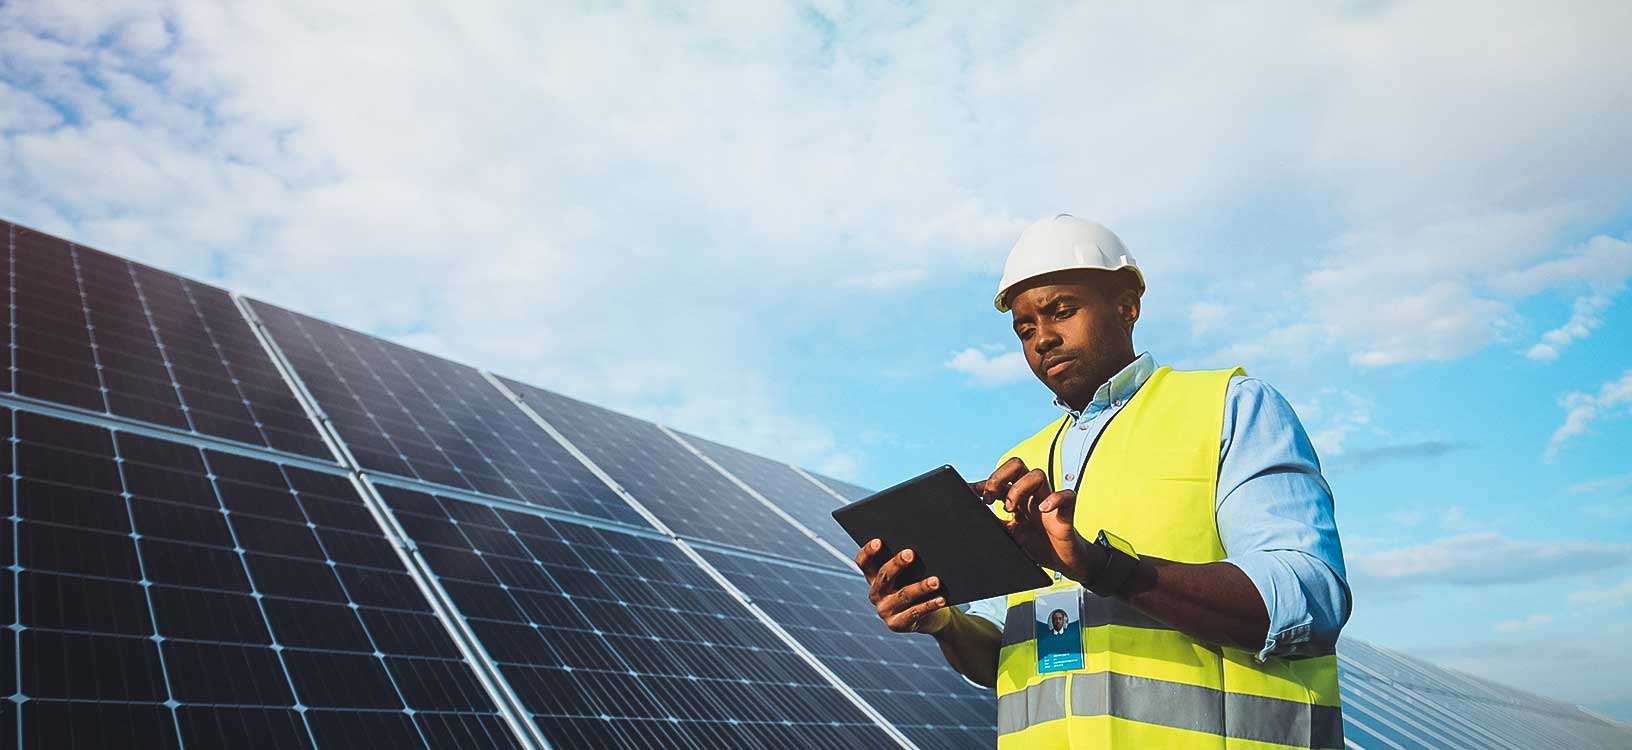 태블릿을 사용하여 태양광 발전소의 현재 운영 상태를 확인하고 있는 운영 관리자.